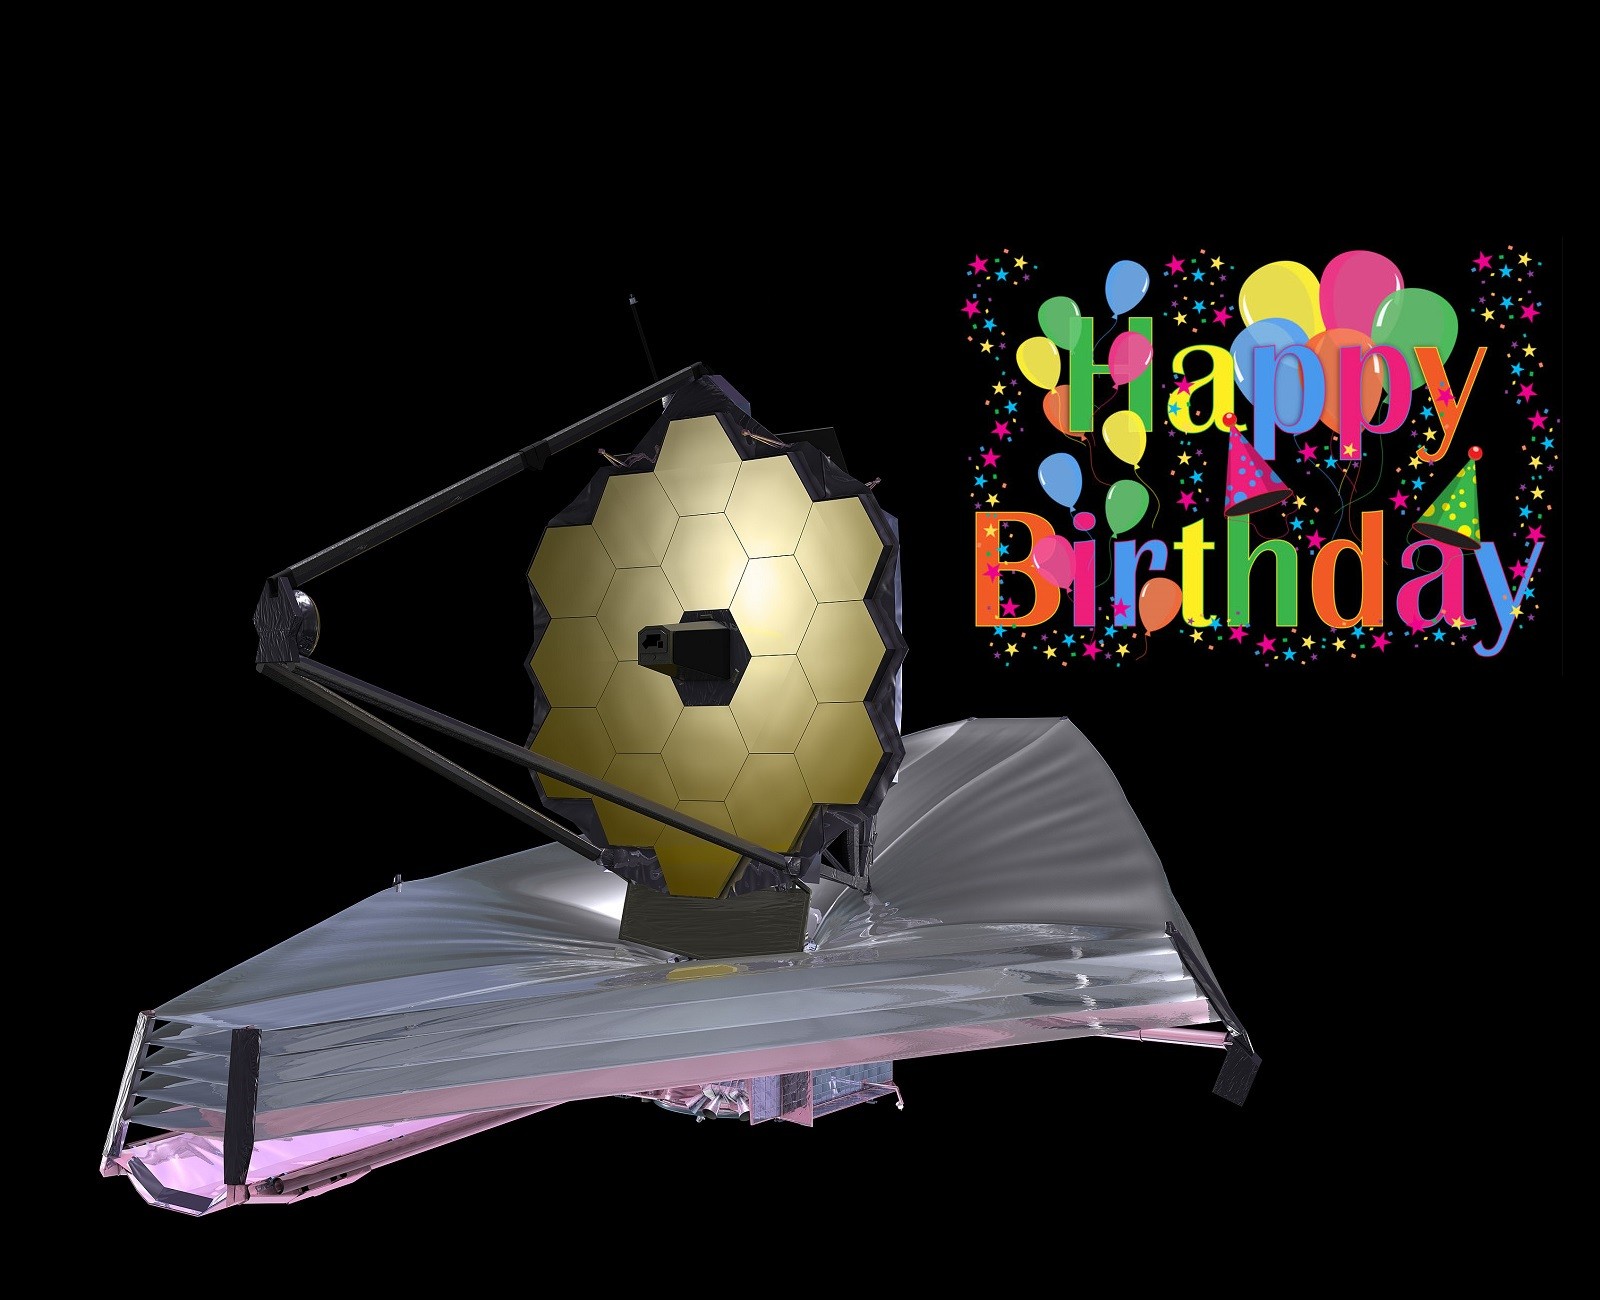 Teleskop Webba obchodzi urodziny. Z tej okazji udostępnił zdjęcie, które po prostu trzeba zobaczyć